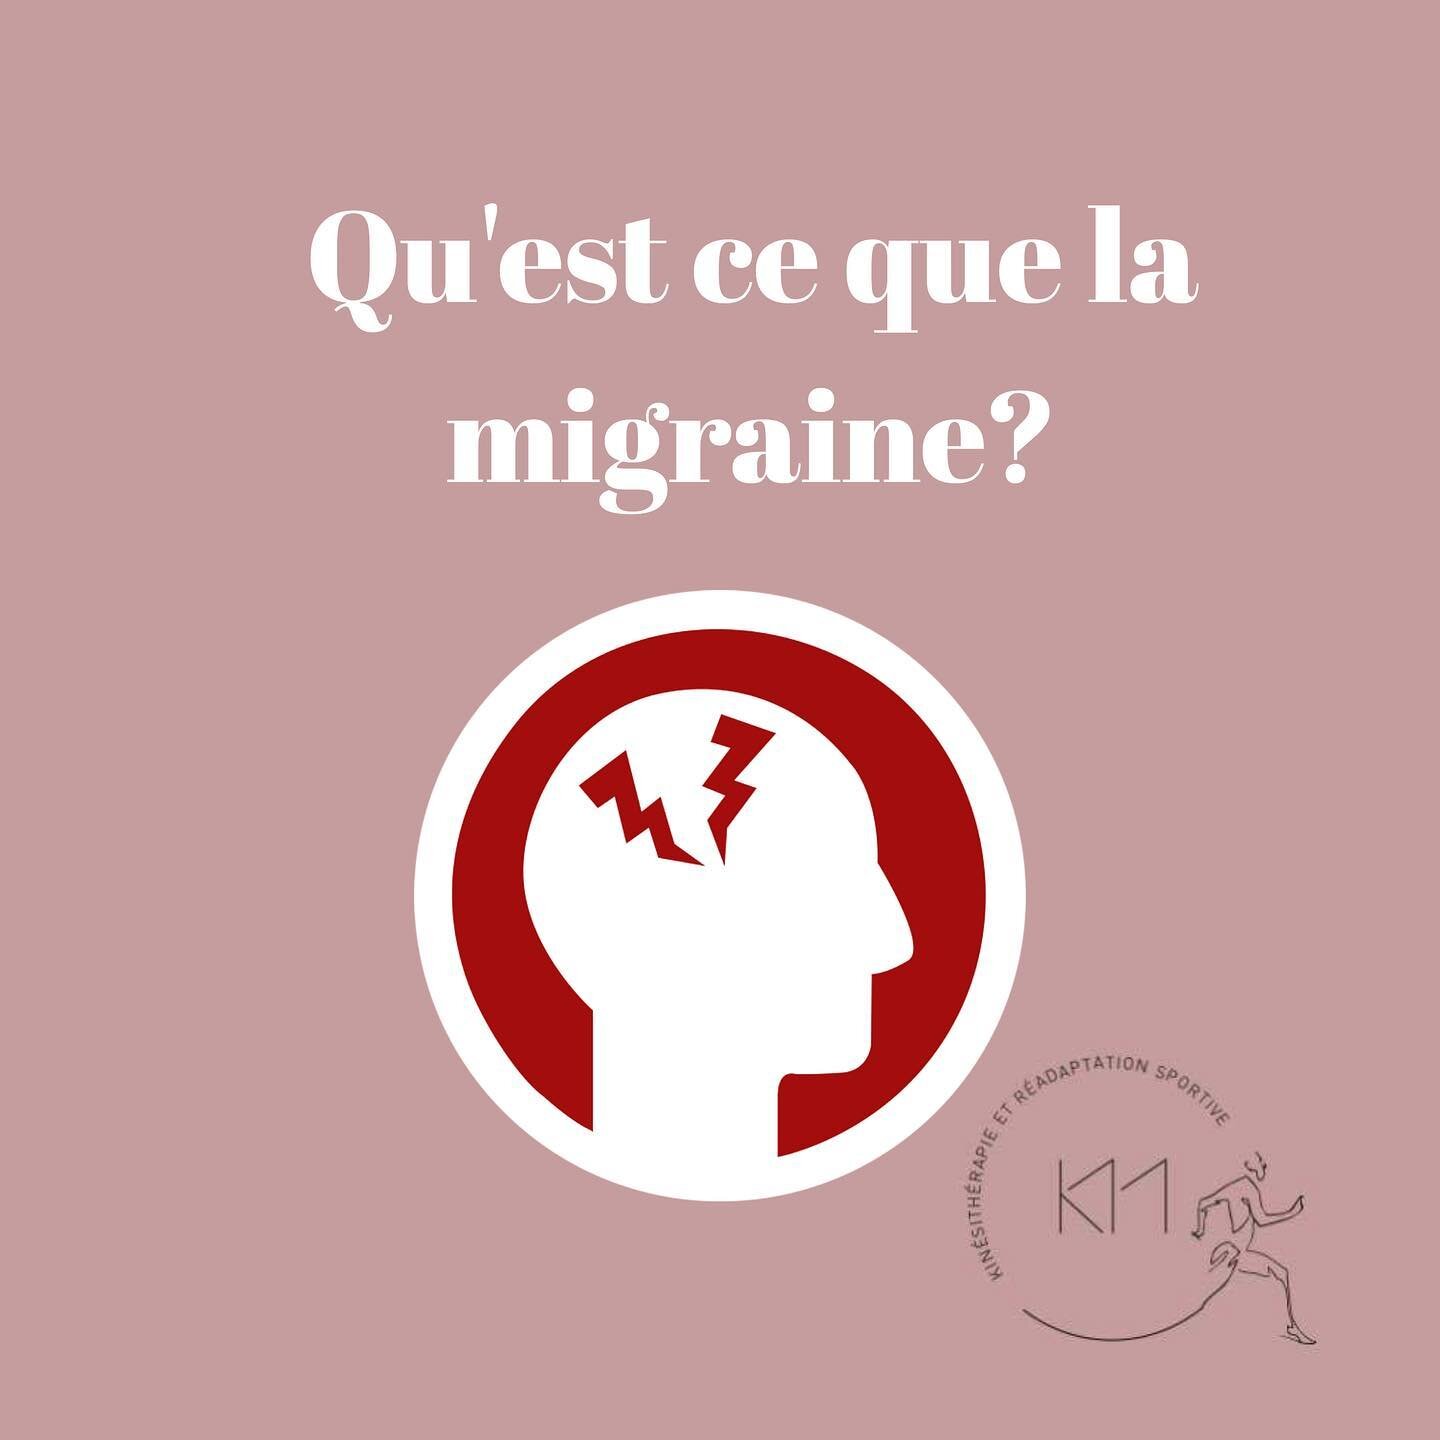 .
🧠&nbsp;Cette semaine on vous parle des migraines !
.
Sources:
.
🖇Coppola, G., Di Lorenzo, C., Serrao, M., Parisi, V., Schoenen, J., &amp; Pierelli, F. (2016). Pathophysiological targets for non-pharmacological treatment of migraine. Cephalalgia, 